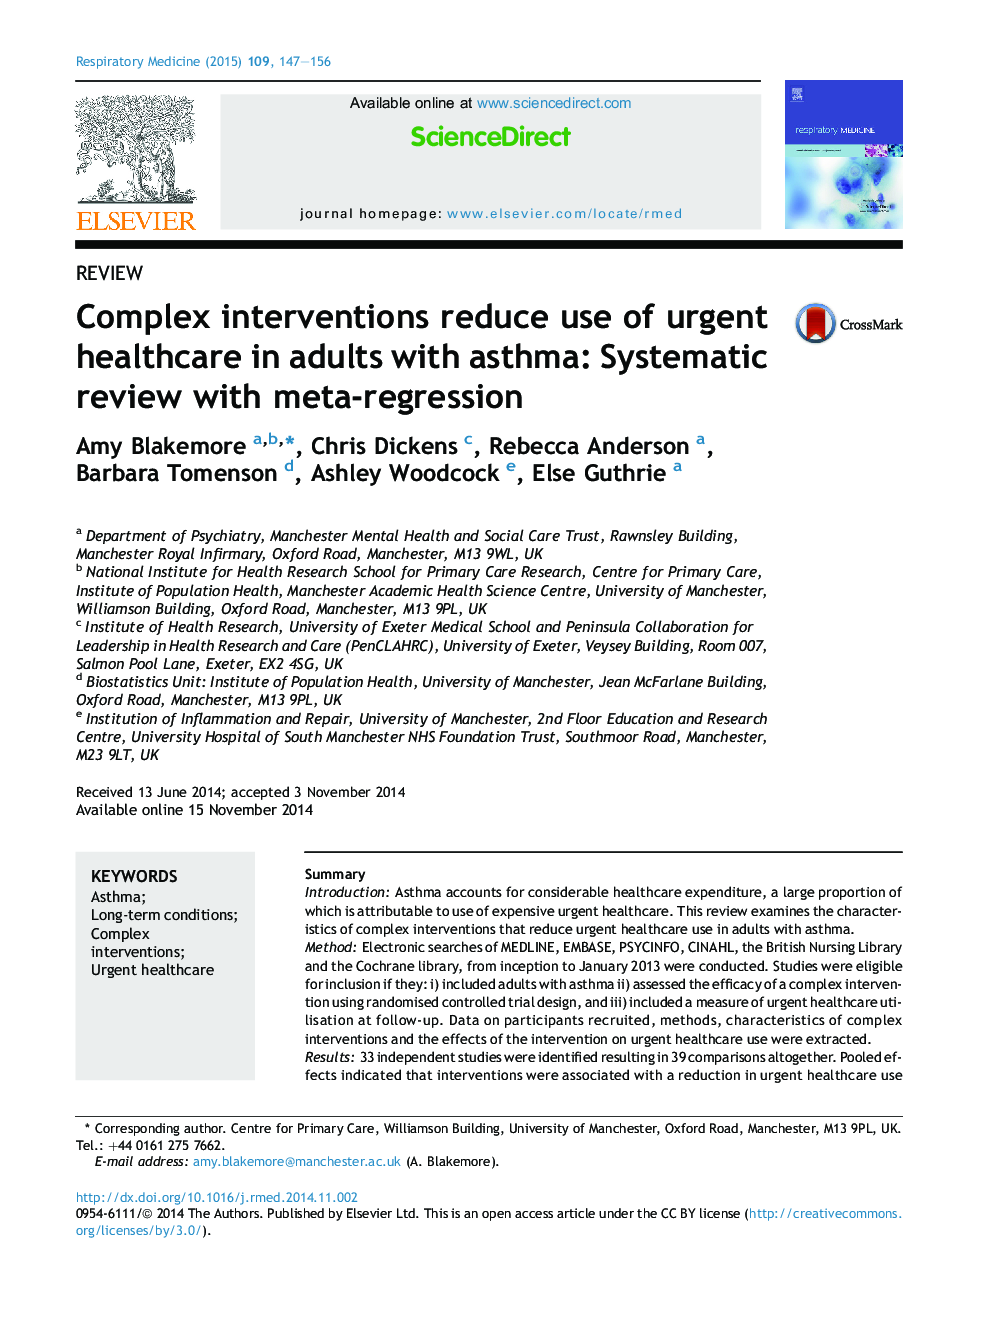 مداخلات مجتمع استفاده از مراقبت های بهداشتی فوری در بزرگسالان مبتلا به آسم را کاهش می دهد: بررسی سیستماتیک با فراگرد رگرسیون 